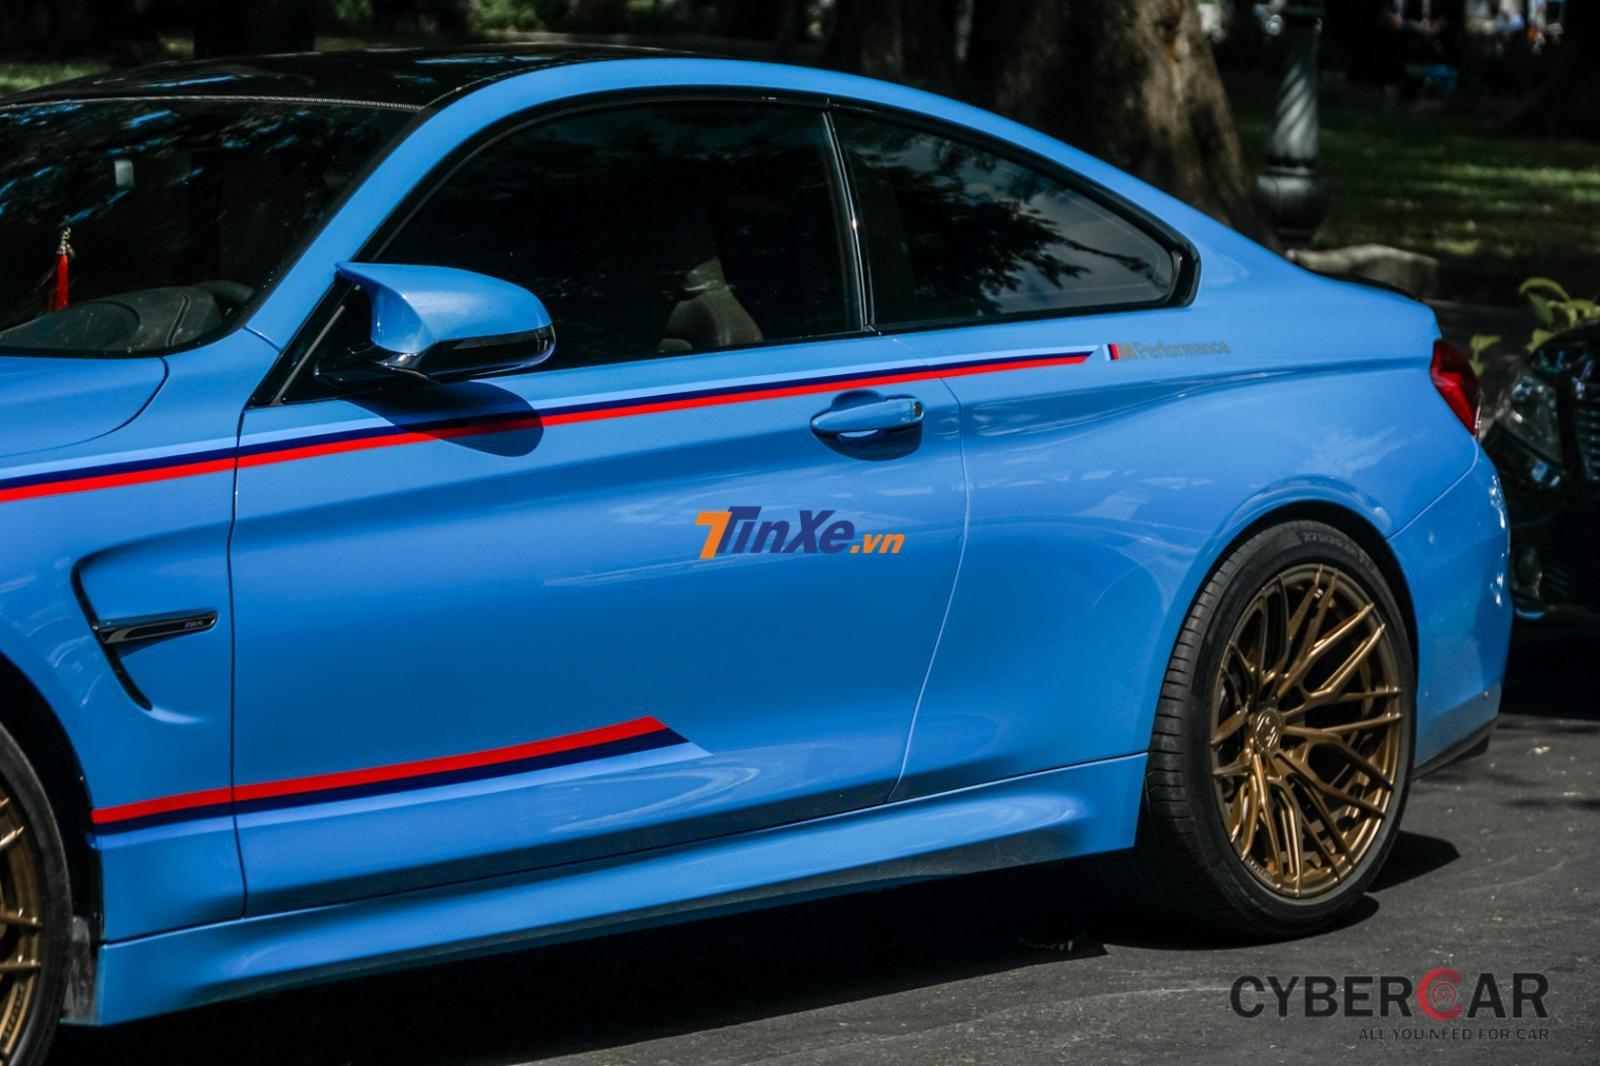 Ngoại hình chiếc BMW M4 F82 Coupe màu xanh Yas Marina Blue này còn được chủ nhân trang trí thêm các sọc màu đỏ, xanh dương đậm và xanh